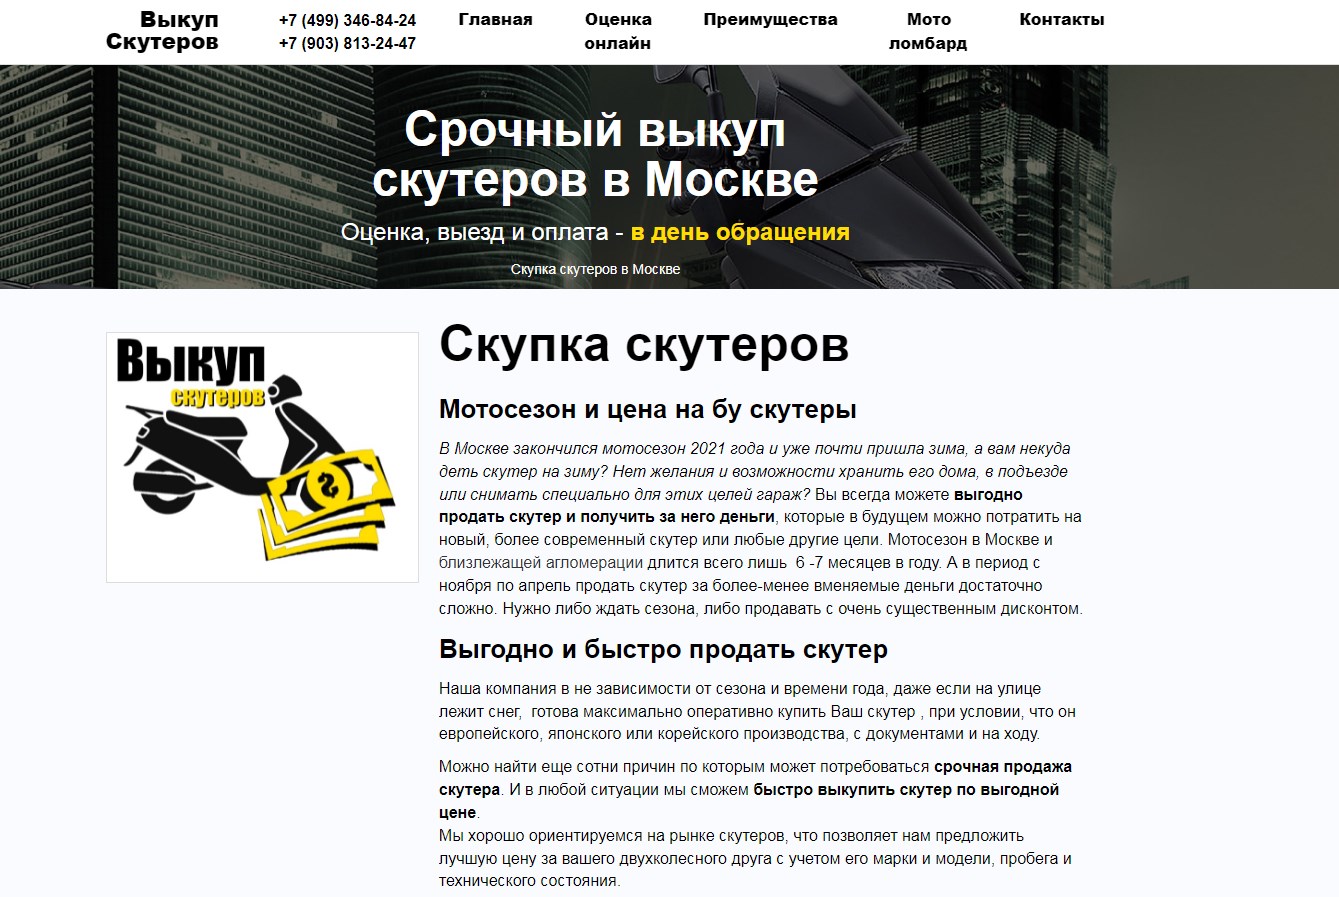 Скупка скутеров в Москве